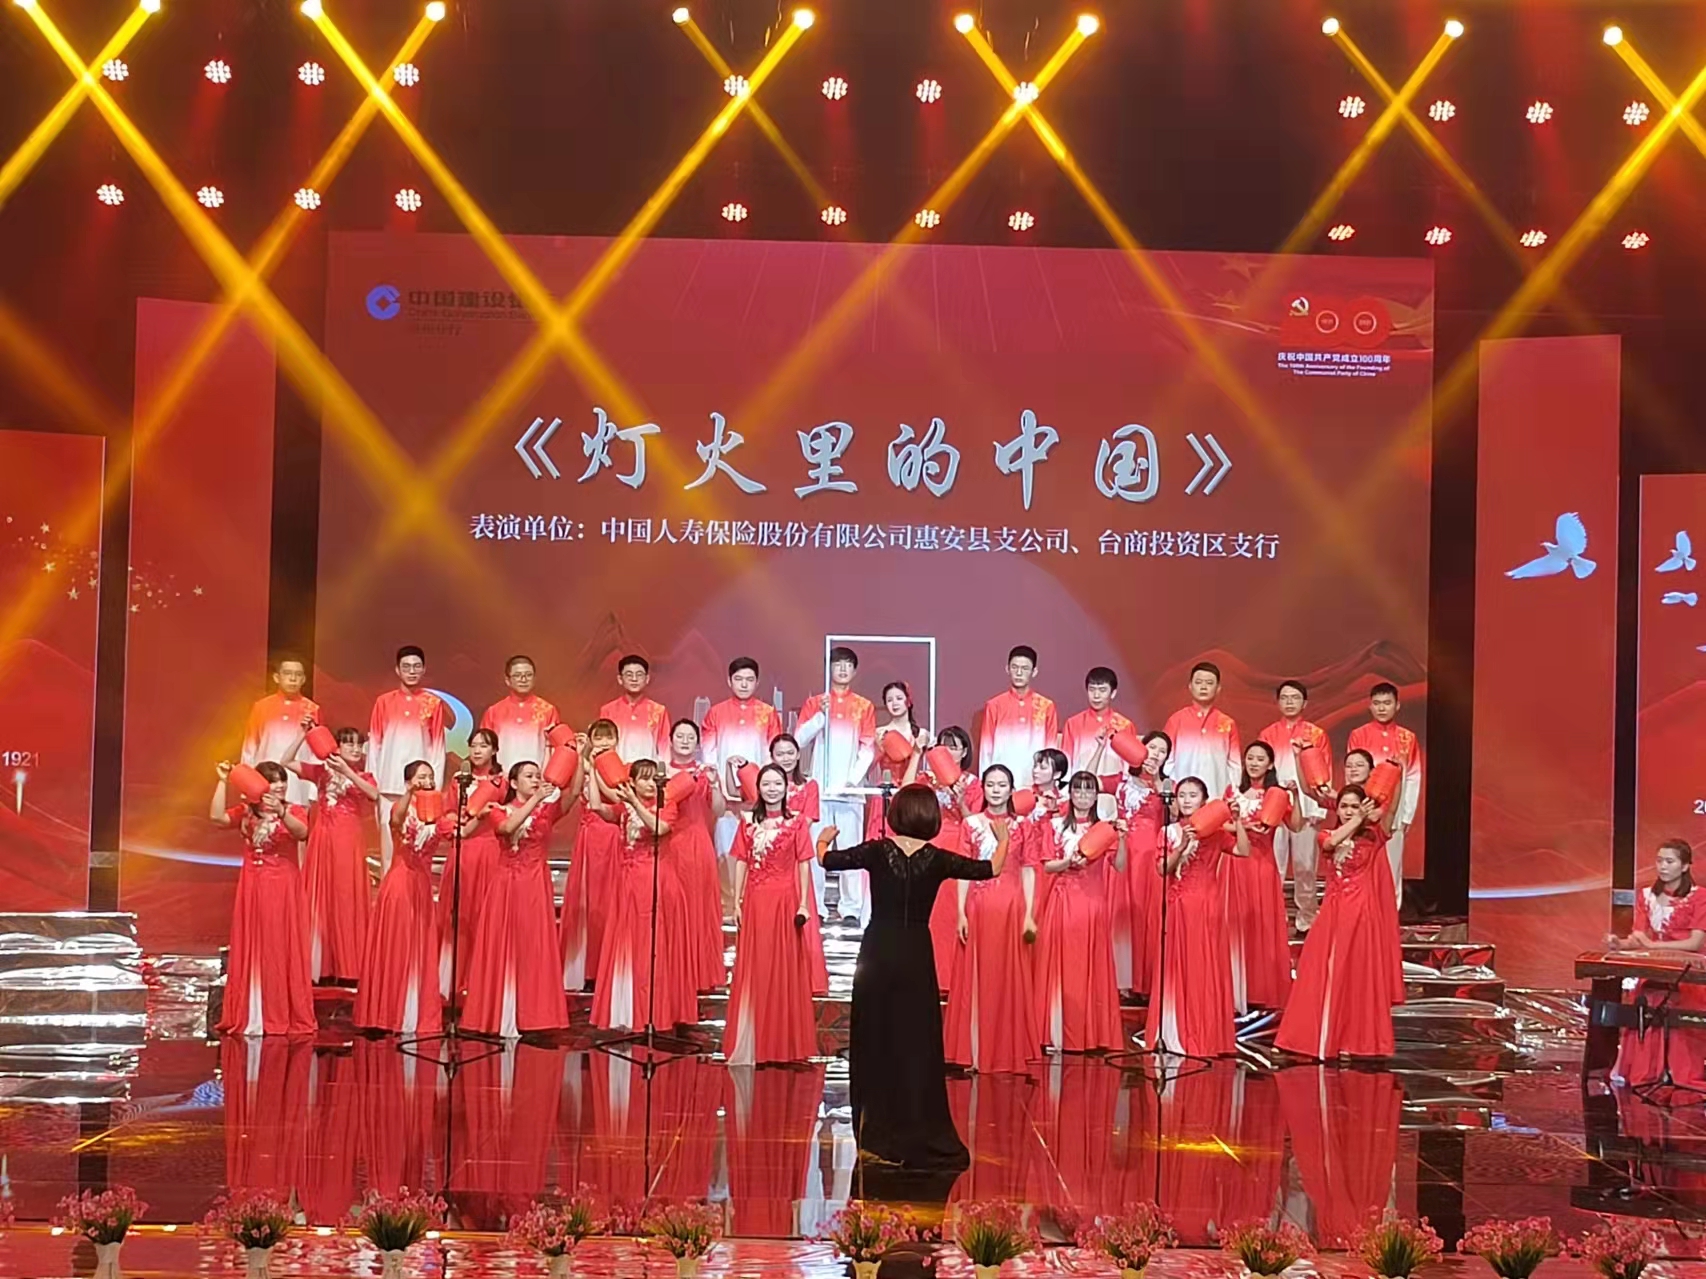 中国人寿惠安县支公司和中国建设银行台商支行联合献唱红歌2021.11.22.jpg